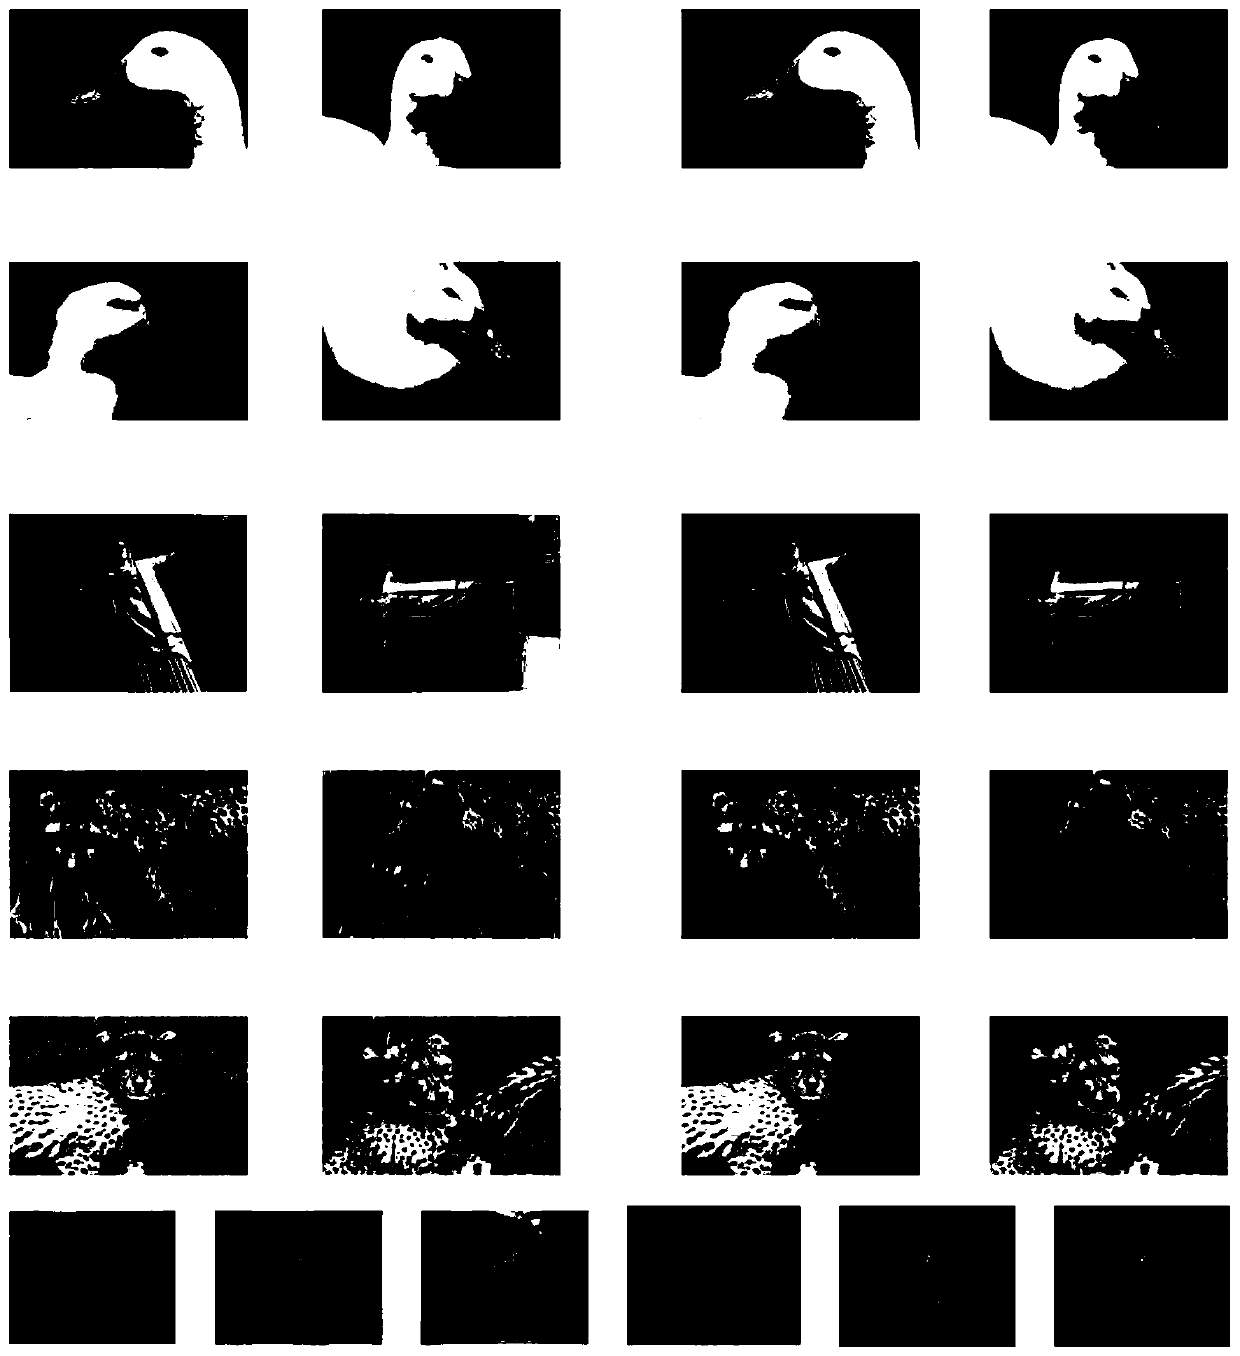 Image collaborative segmentation method based on minimum fuzzy divergence